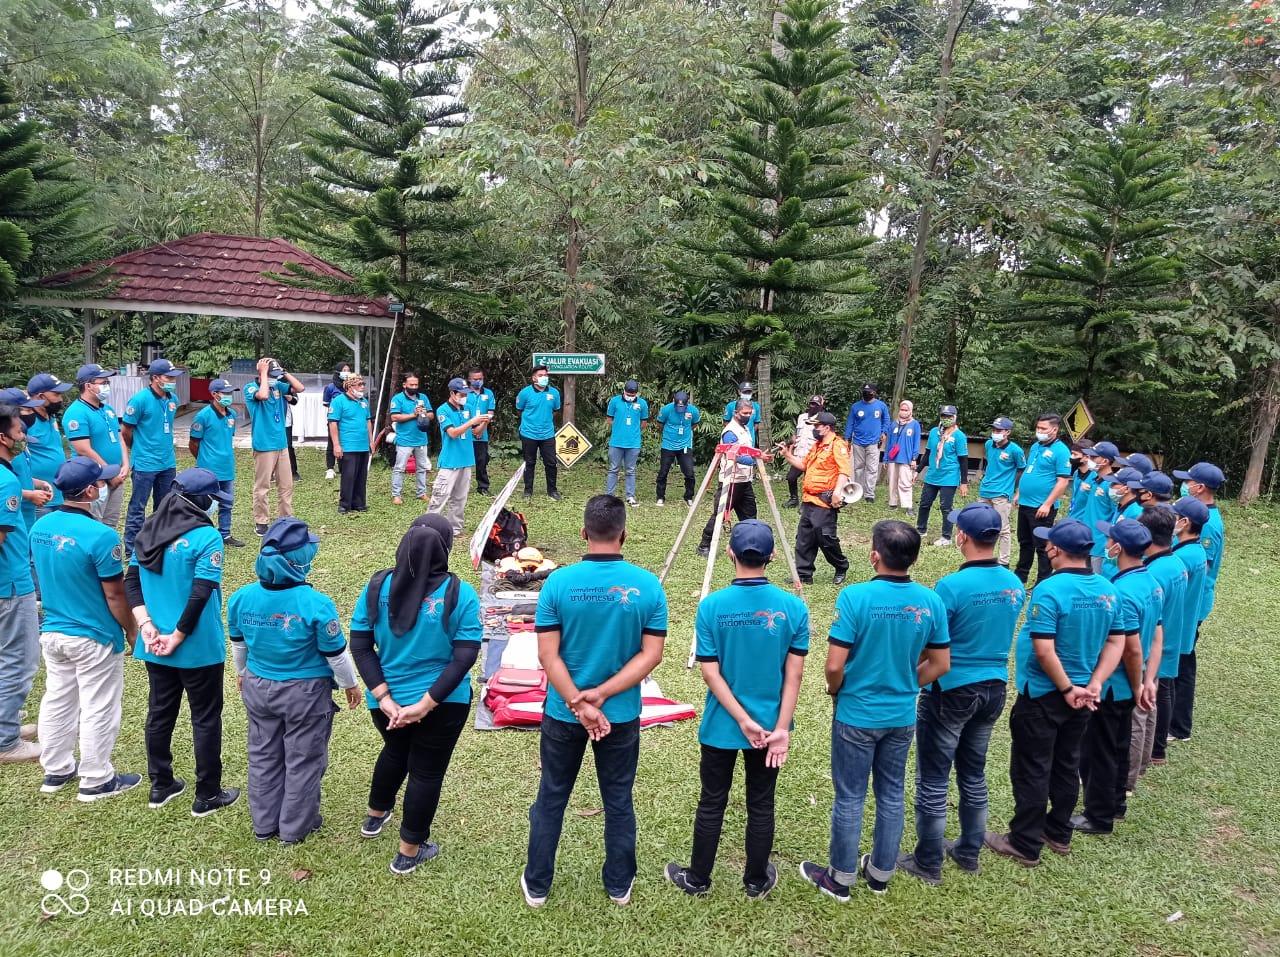 BPBD Kota Sukabumi Ajarkan Keselamatan bagi Pengelola Wisata